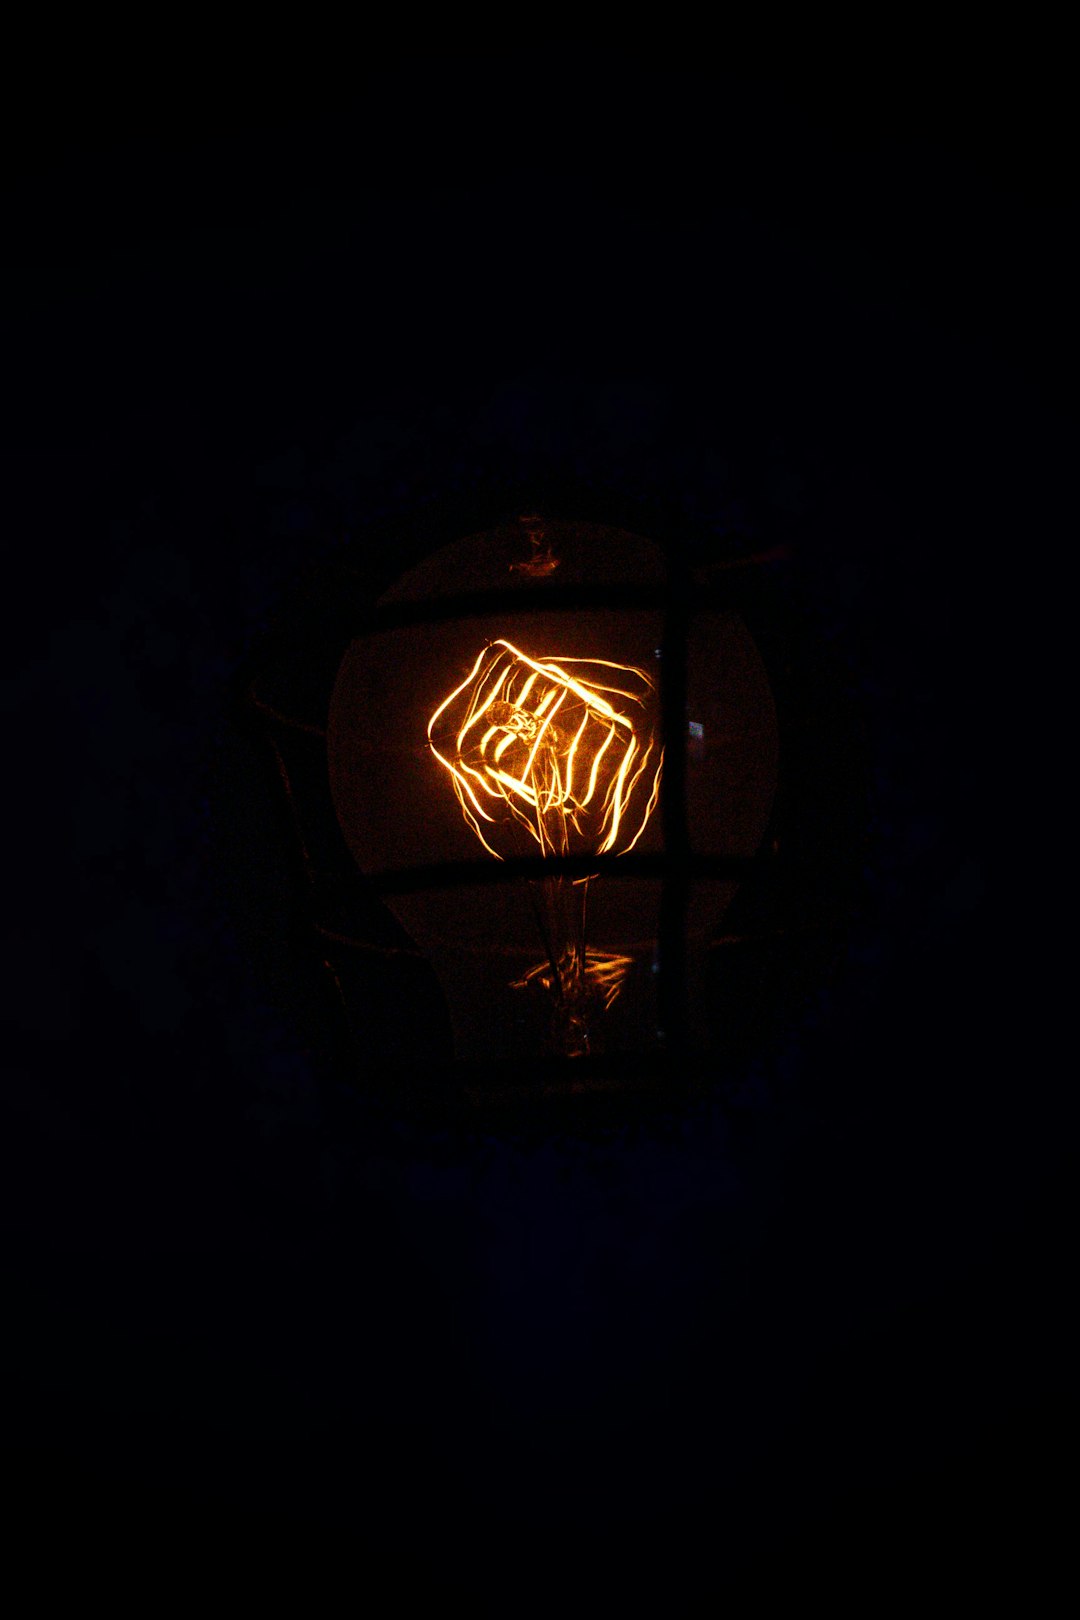 black and orange lantern lamp